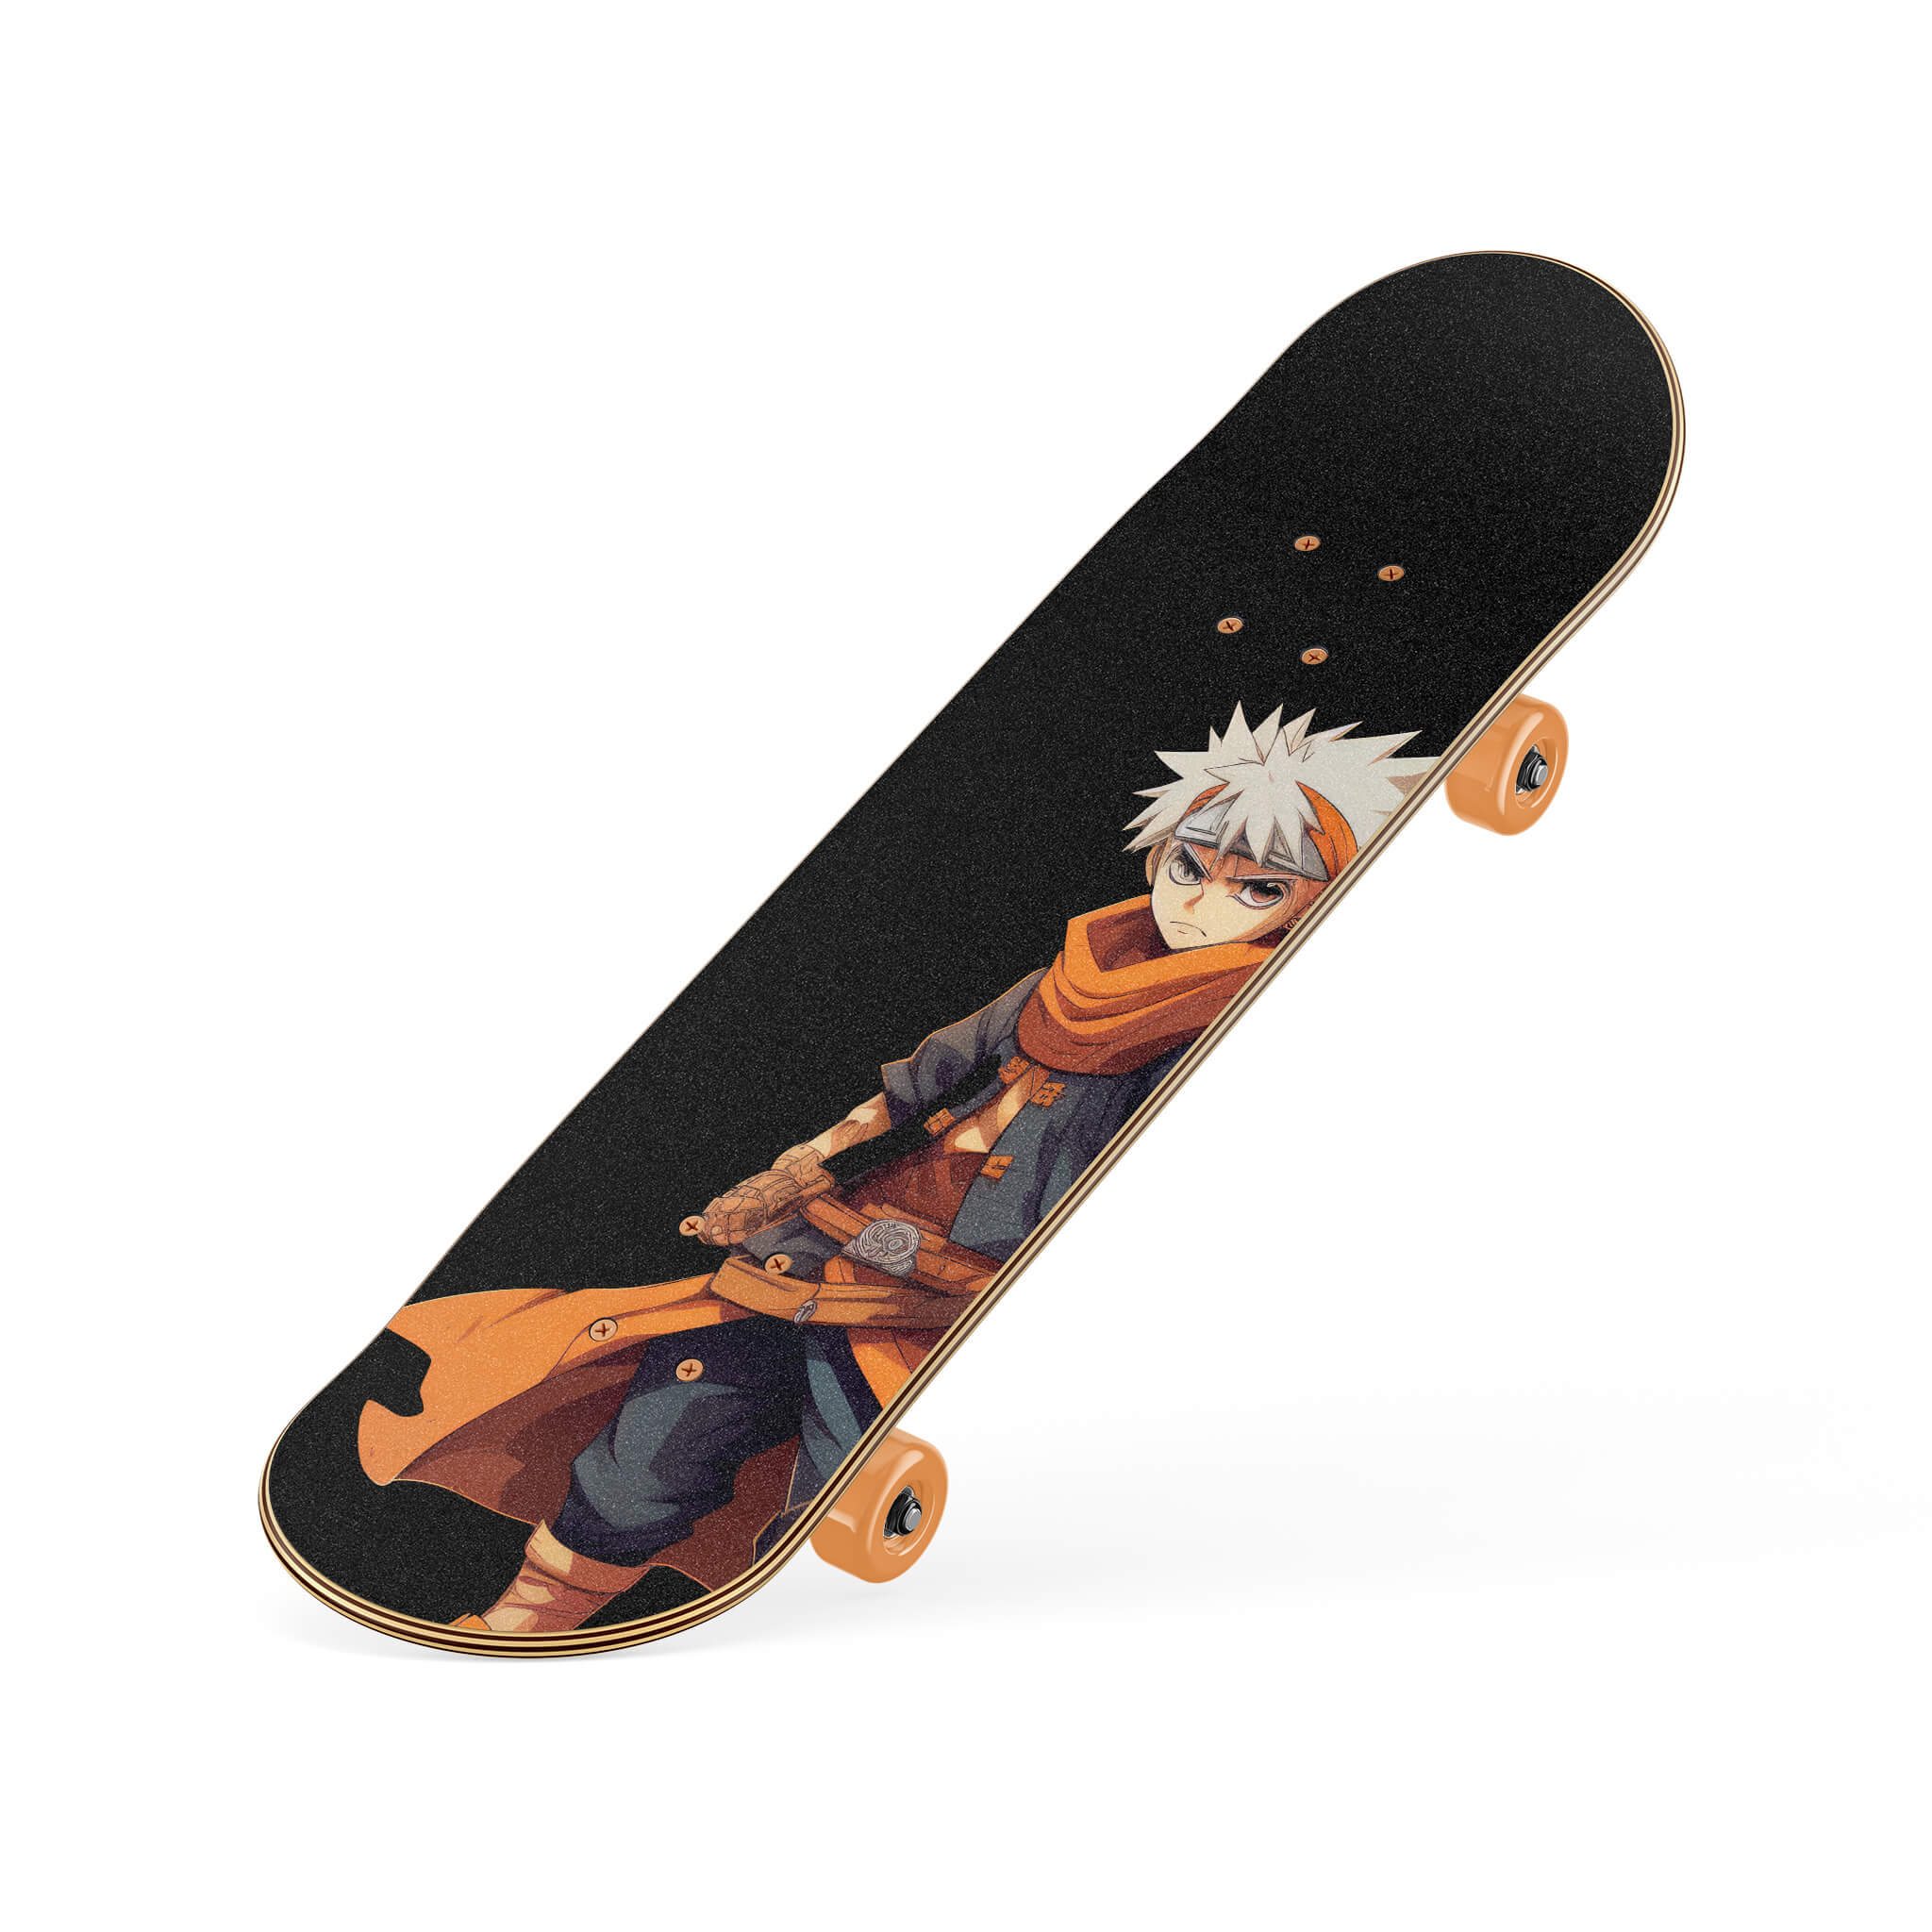 Anime skater boy rolling his skateboard